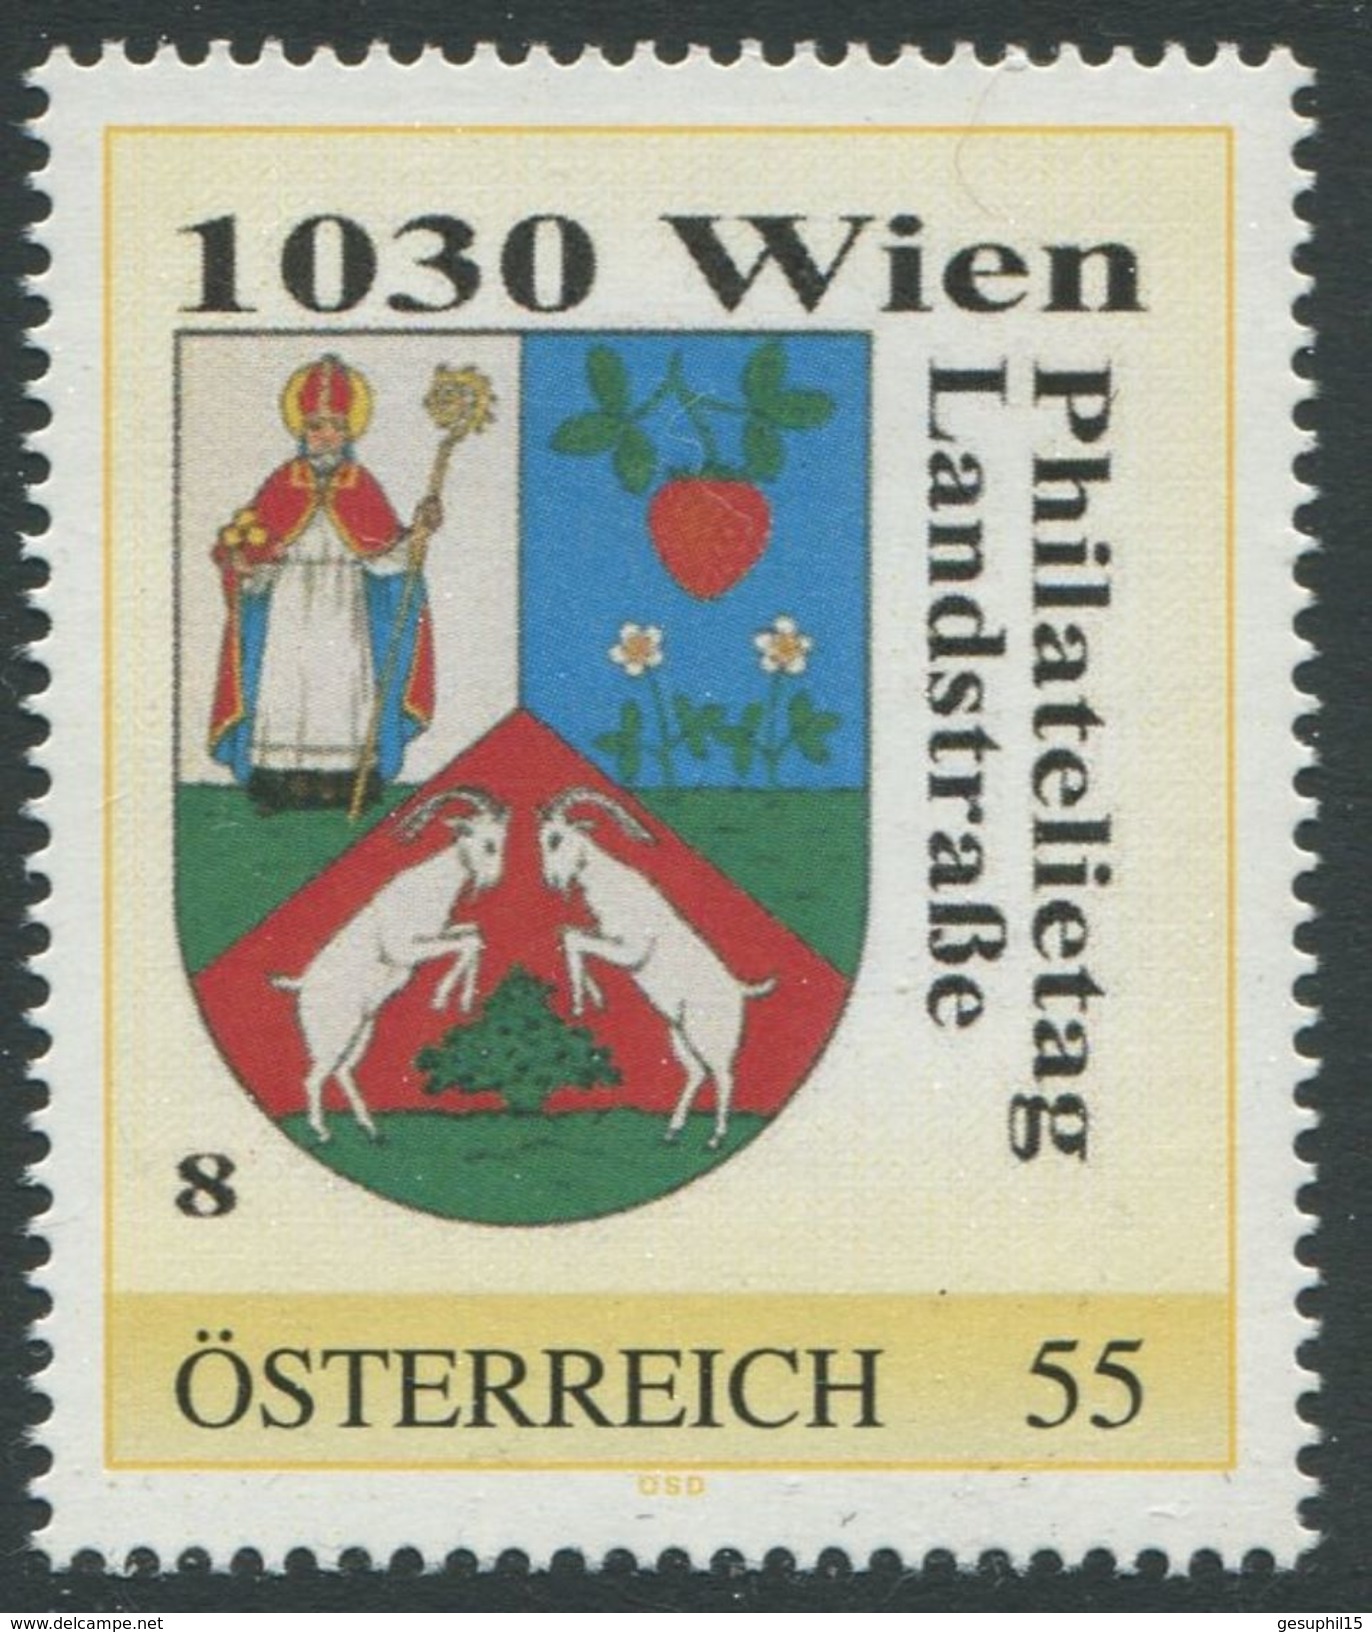 ÖSTERREICH / Philatelietag 1030 Wien / 8015554 / Postfrisch / ** / MNH - Personalisierte Briefmarken